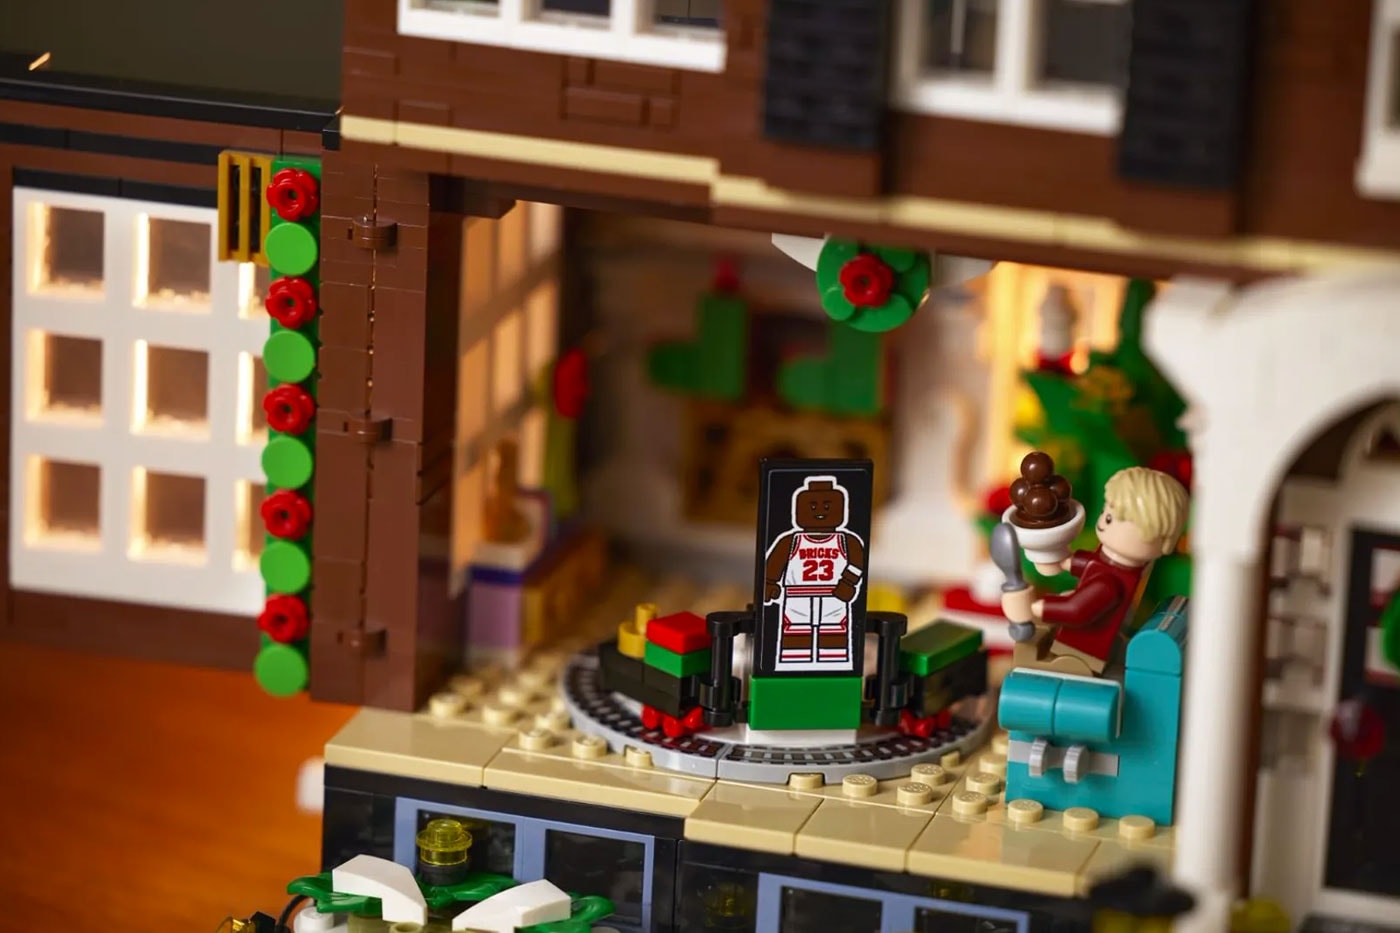 映画『ホーム・アローン』の家を完全再現したレゴセットが登場  LEGO Ideas Home Alone McCallister family residence holiday set chirstmas films macaulay culkin toys 